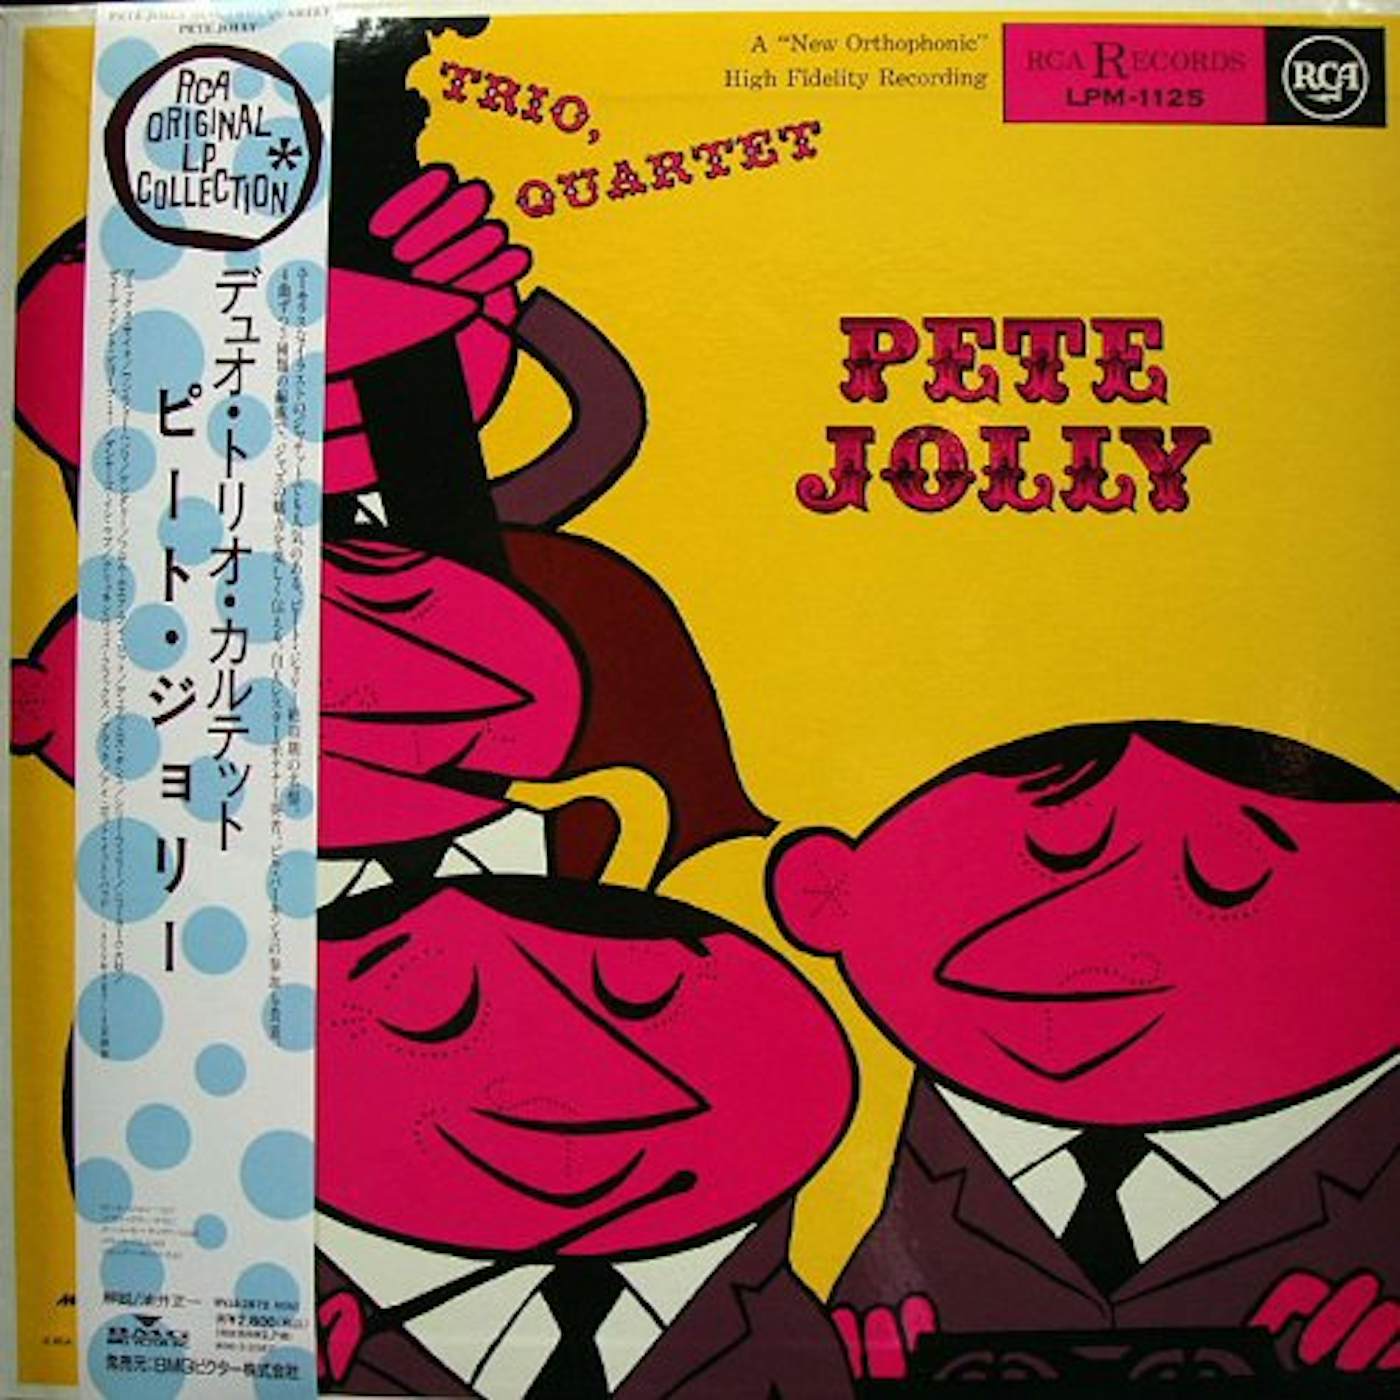 Pete Jolly DUO TRIO QUARTET Vinyl Record